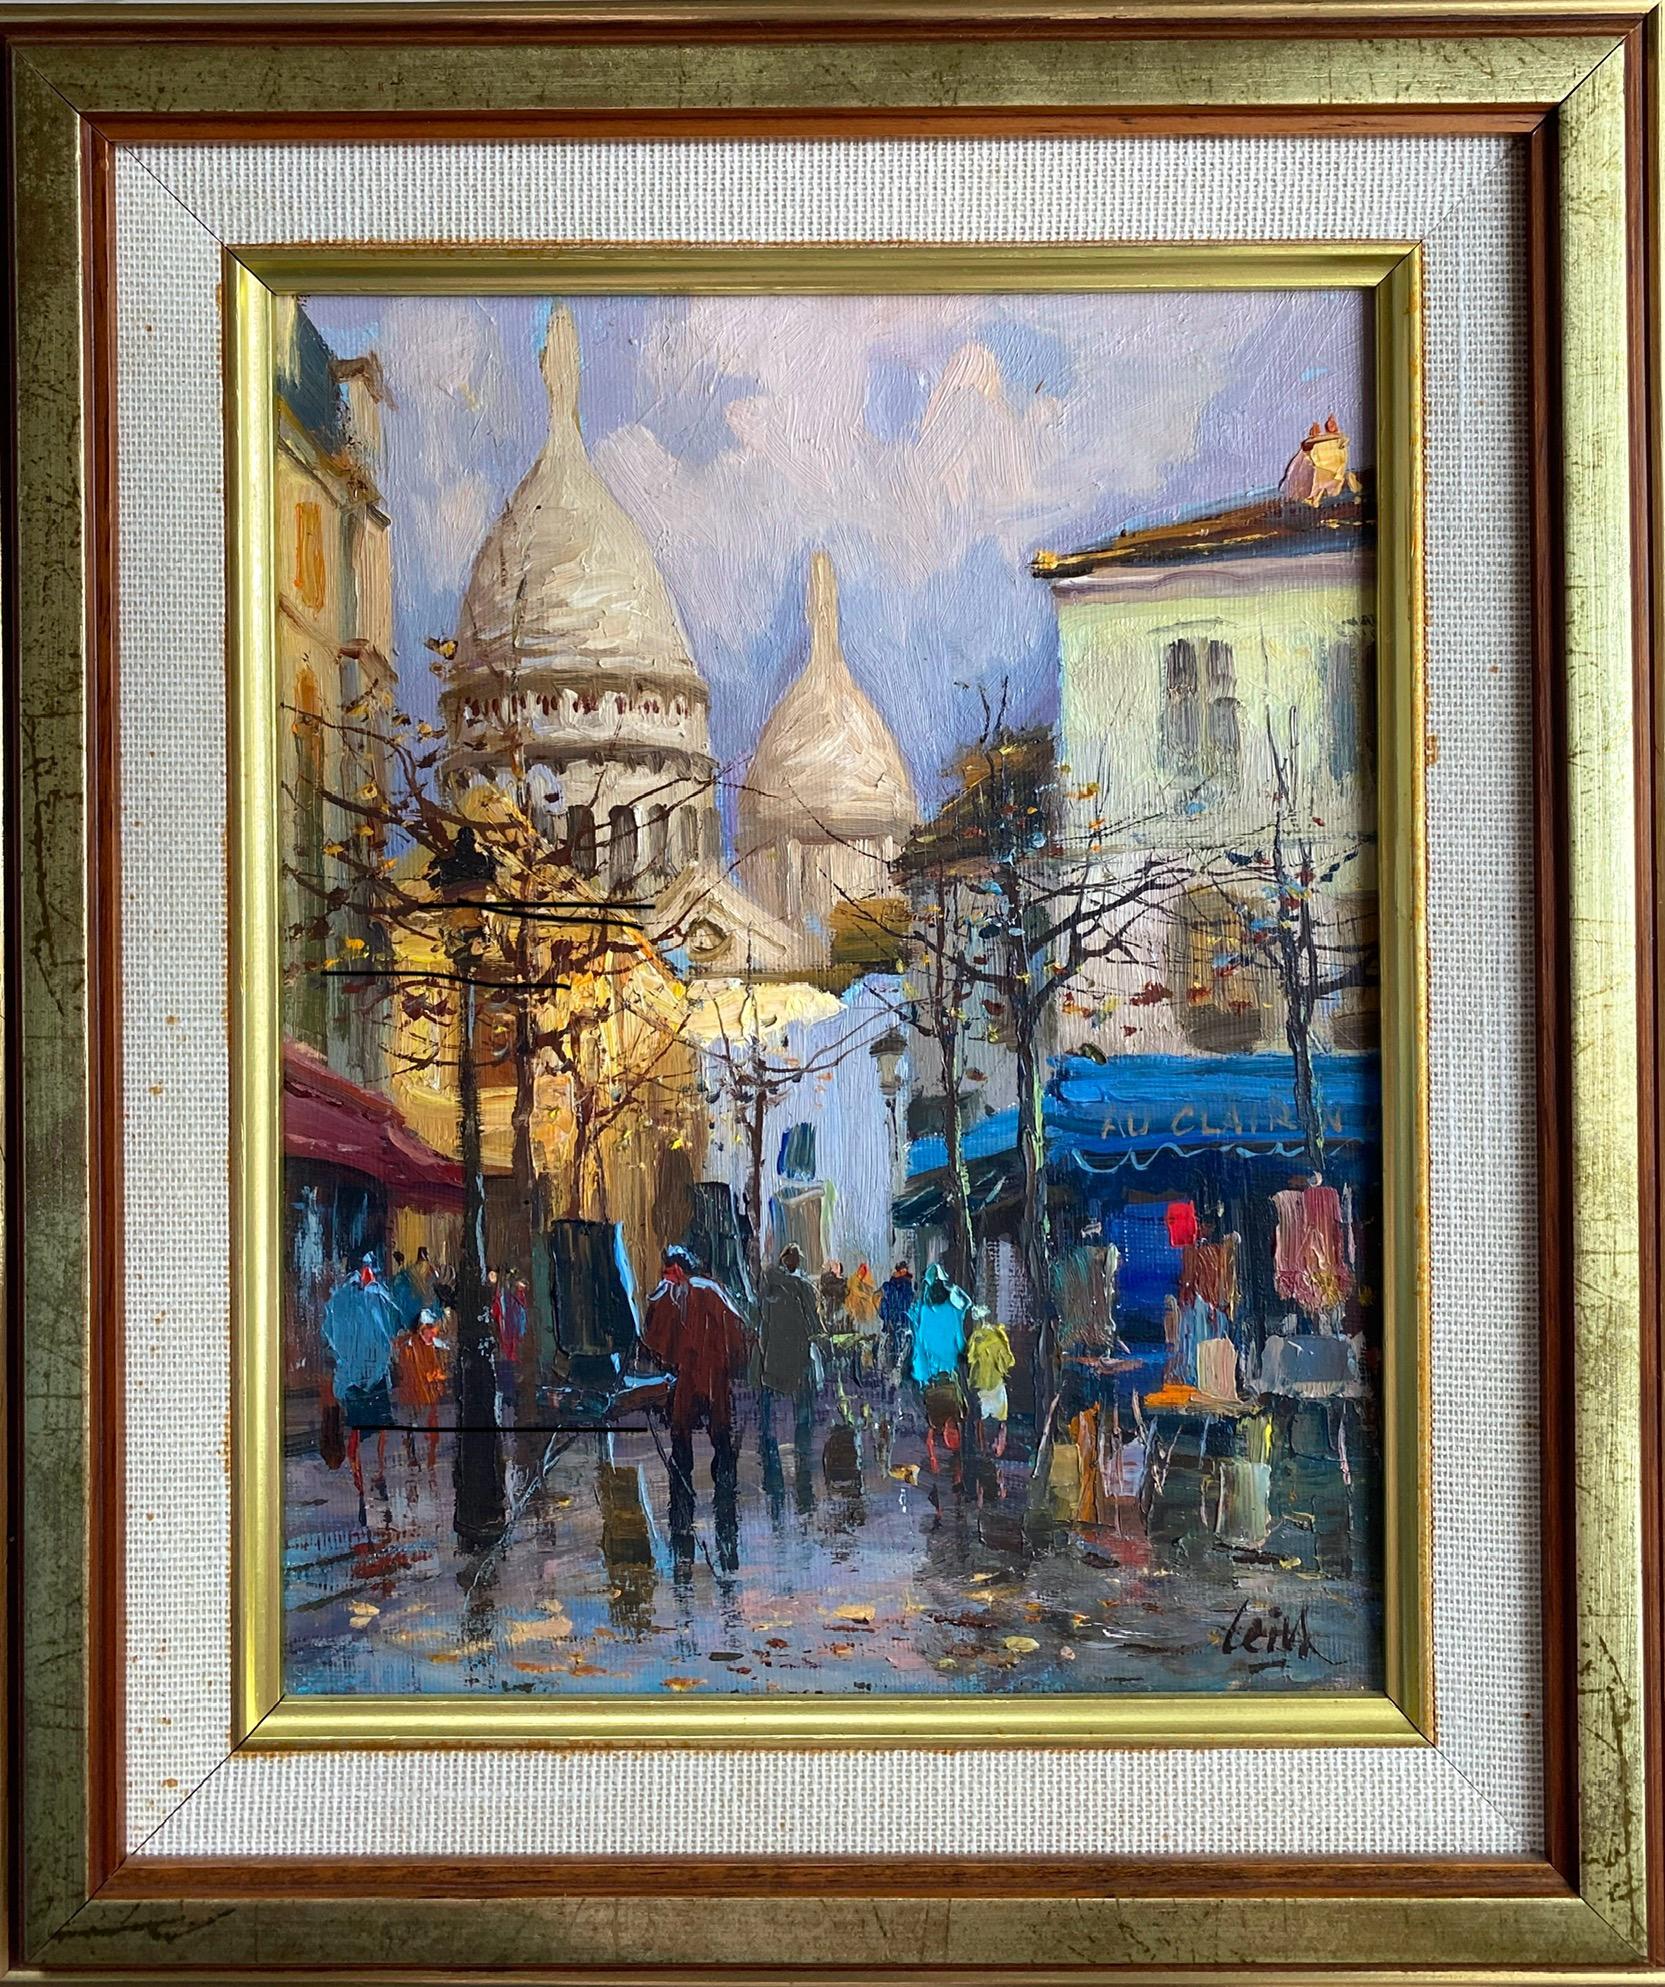 “Place du Tertre,  Montmartre, Paris” - Post-Impressionist Painting by Jose Luis Leiva Sanchez